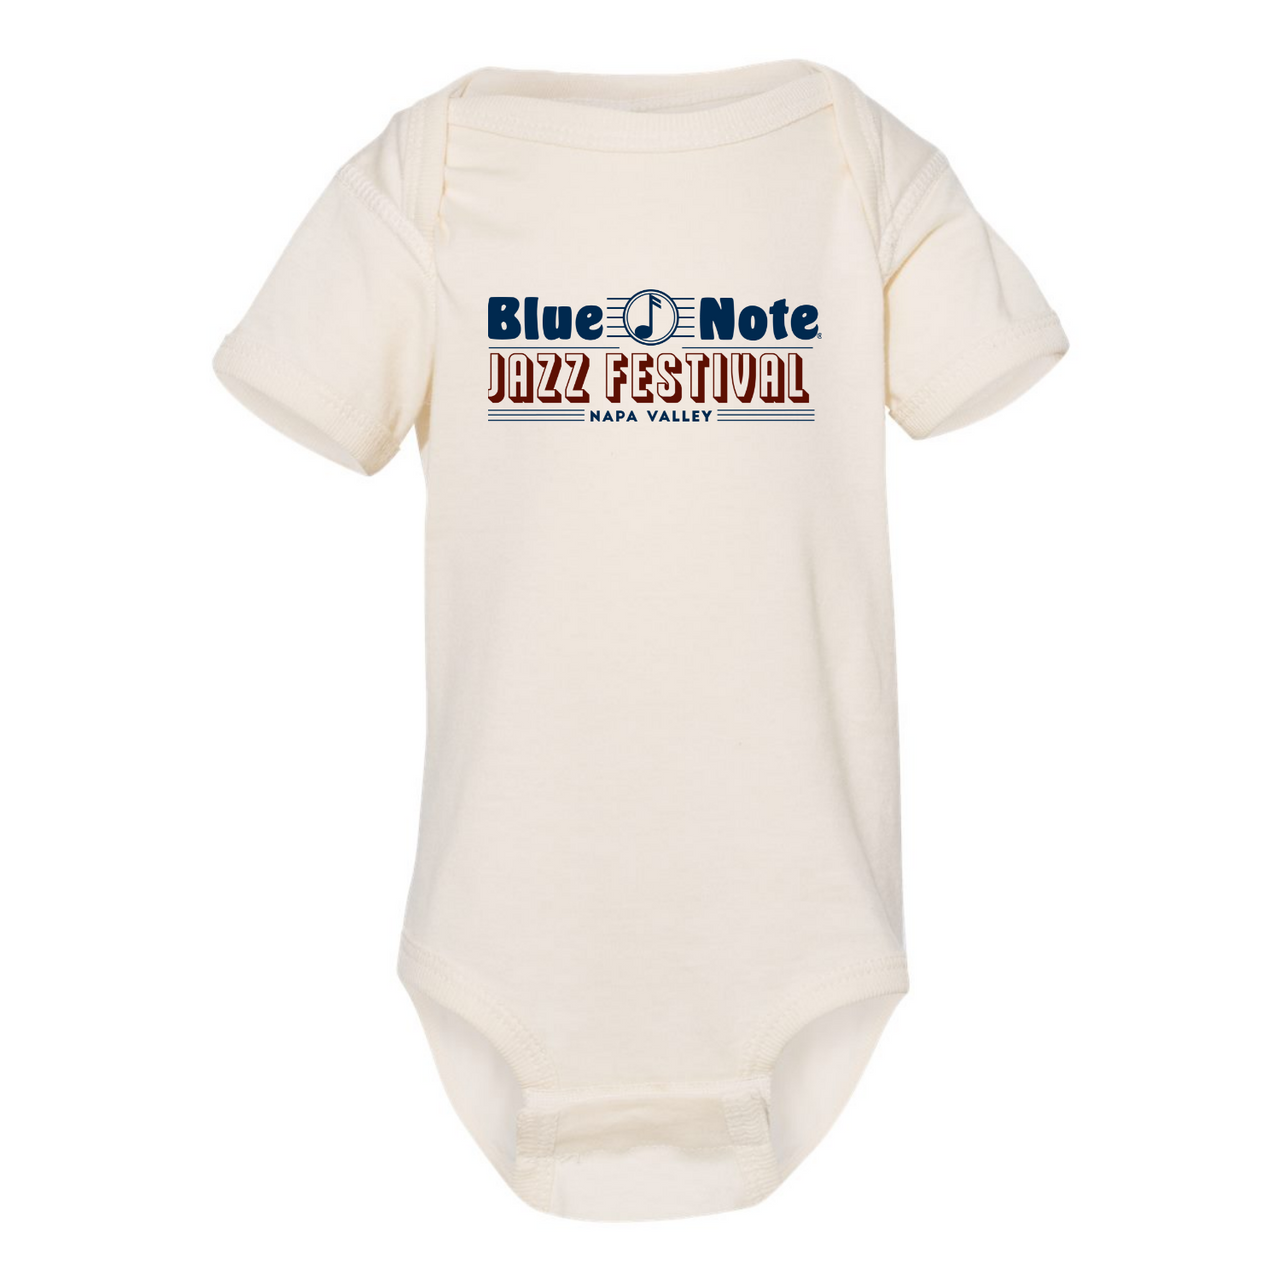 Blue Note Jazz Festival Napa Valley Baby Onesie 12 months